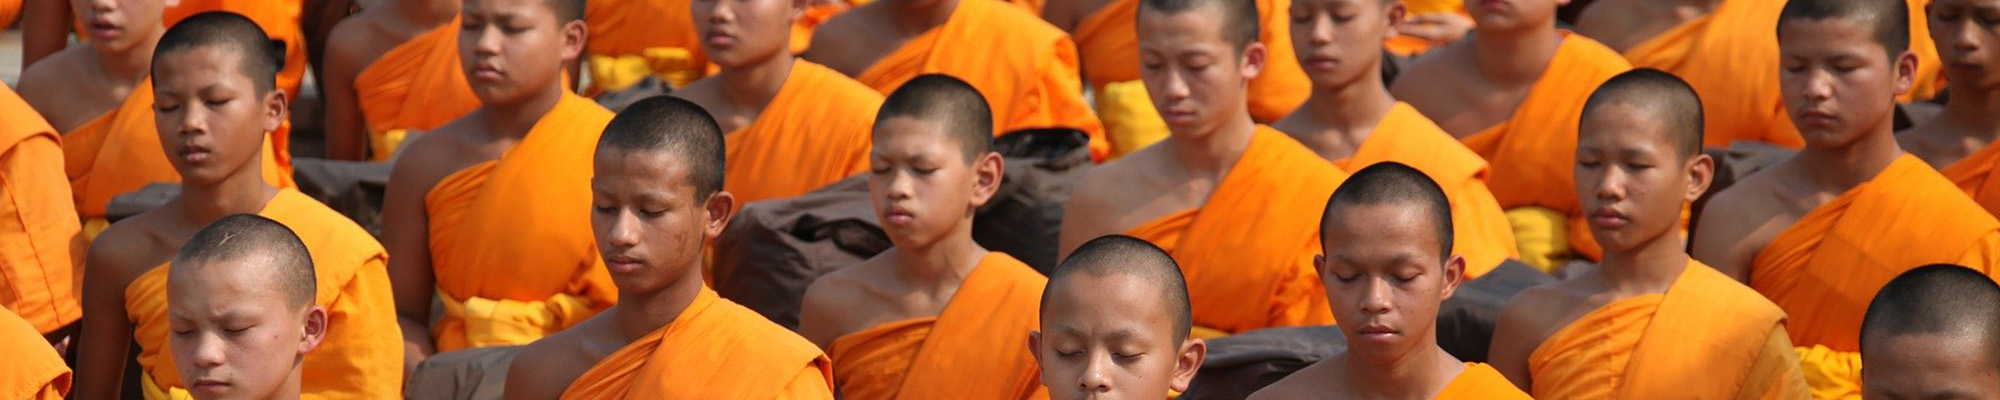 Monks in Thailand gathered in prayer